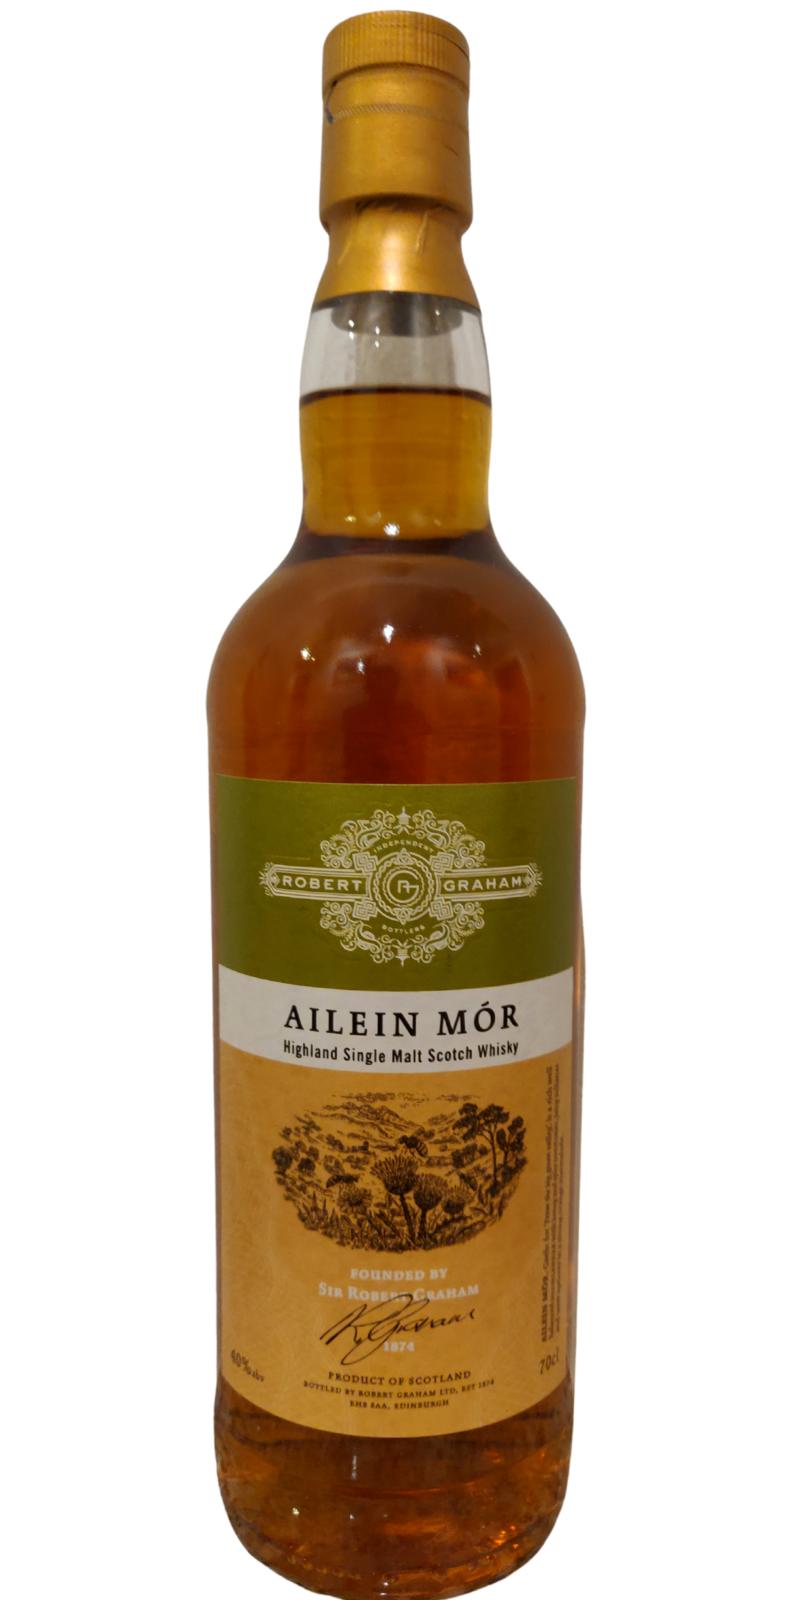 Ailein Mor Highland Single Malt Scotch Whisky RG